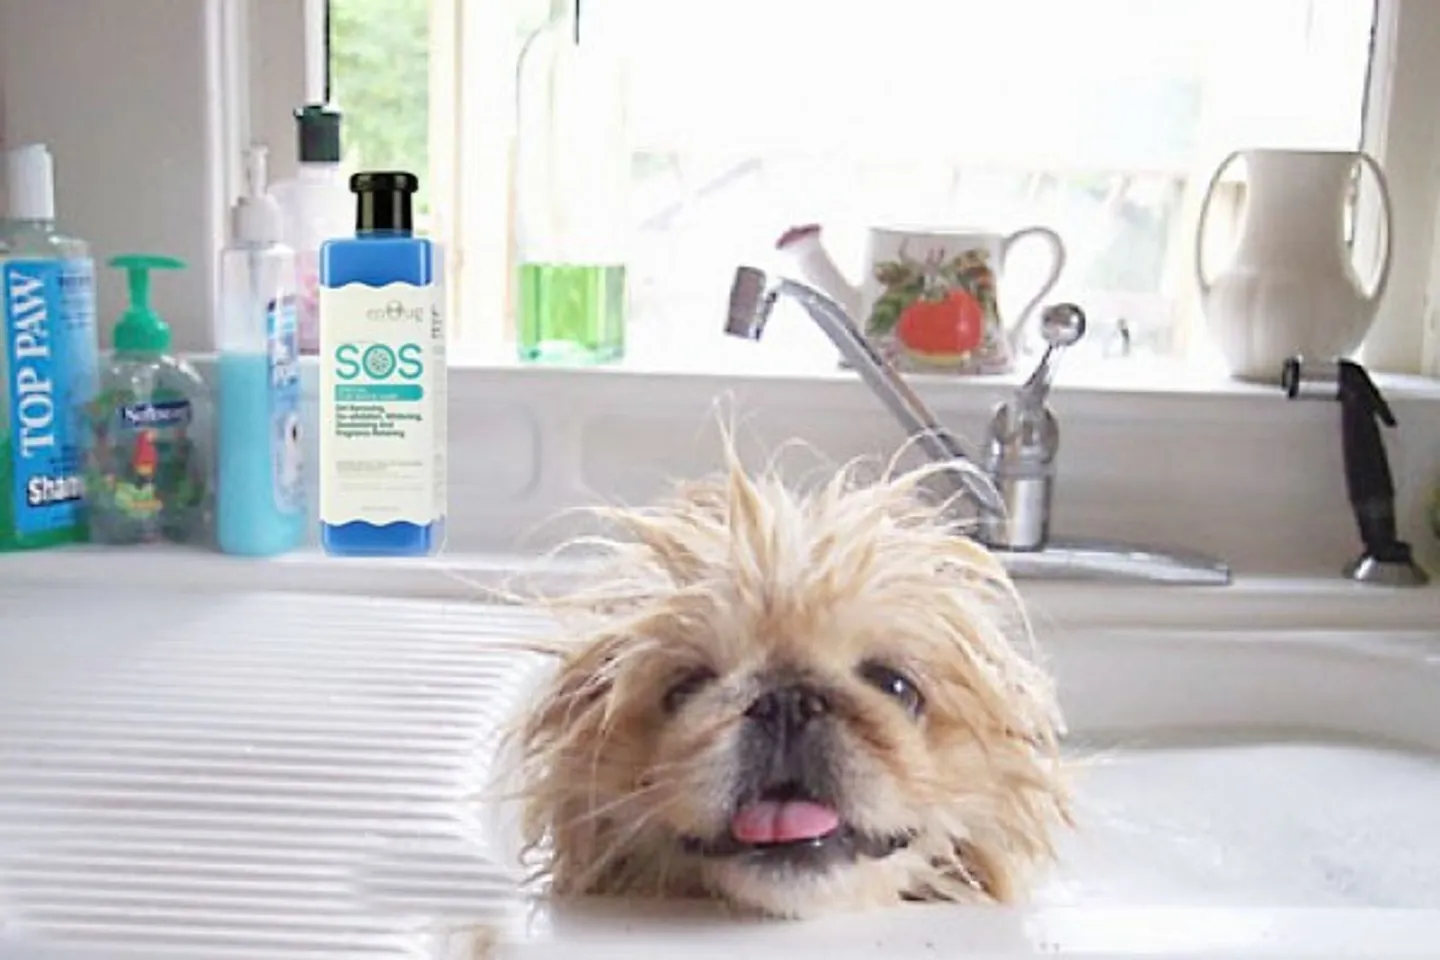 Chó cưng ko cần thiết tắm rất nhiều, tuy nhiên đáp ứng 1 -2 lần/ tháng